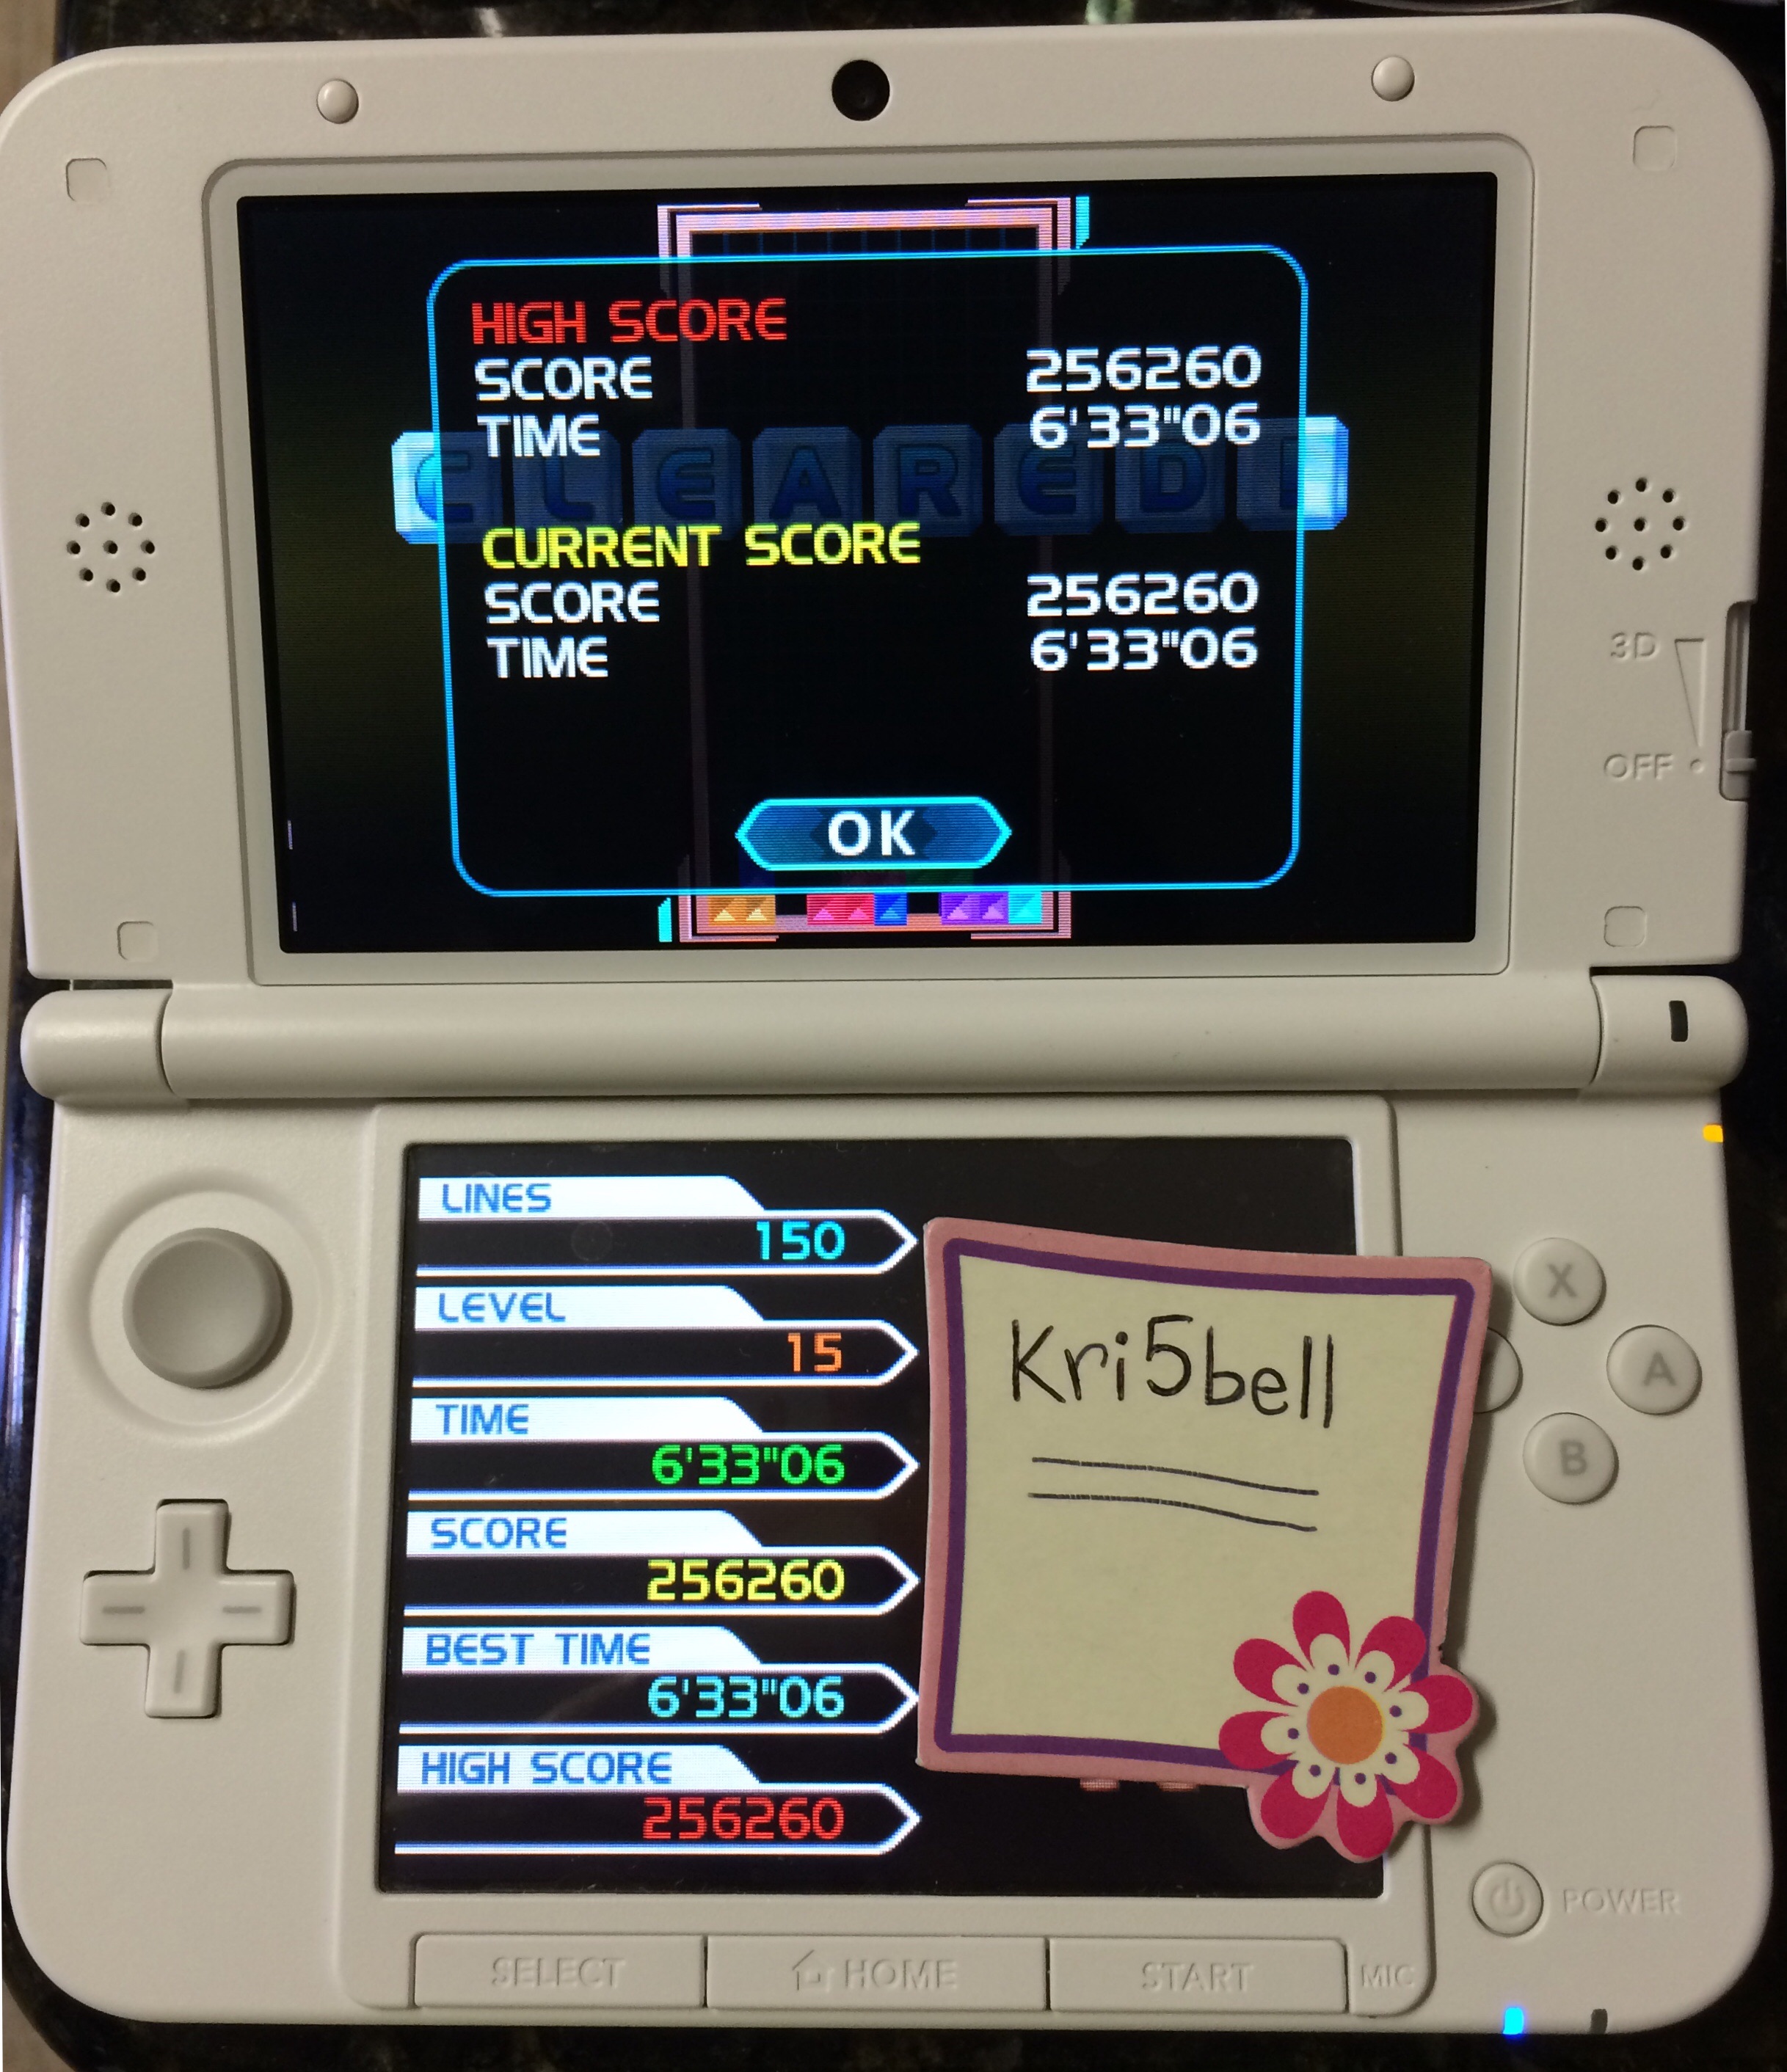 kri5bell: Tetris: Axis [Marathon Mode] (Nintendo 3DS) 256,260 points on 2014-10-06 09:51:37